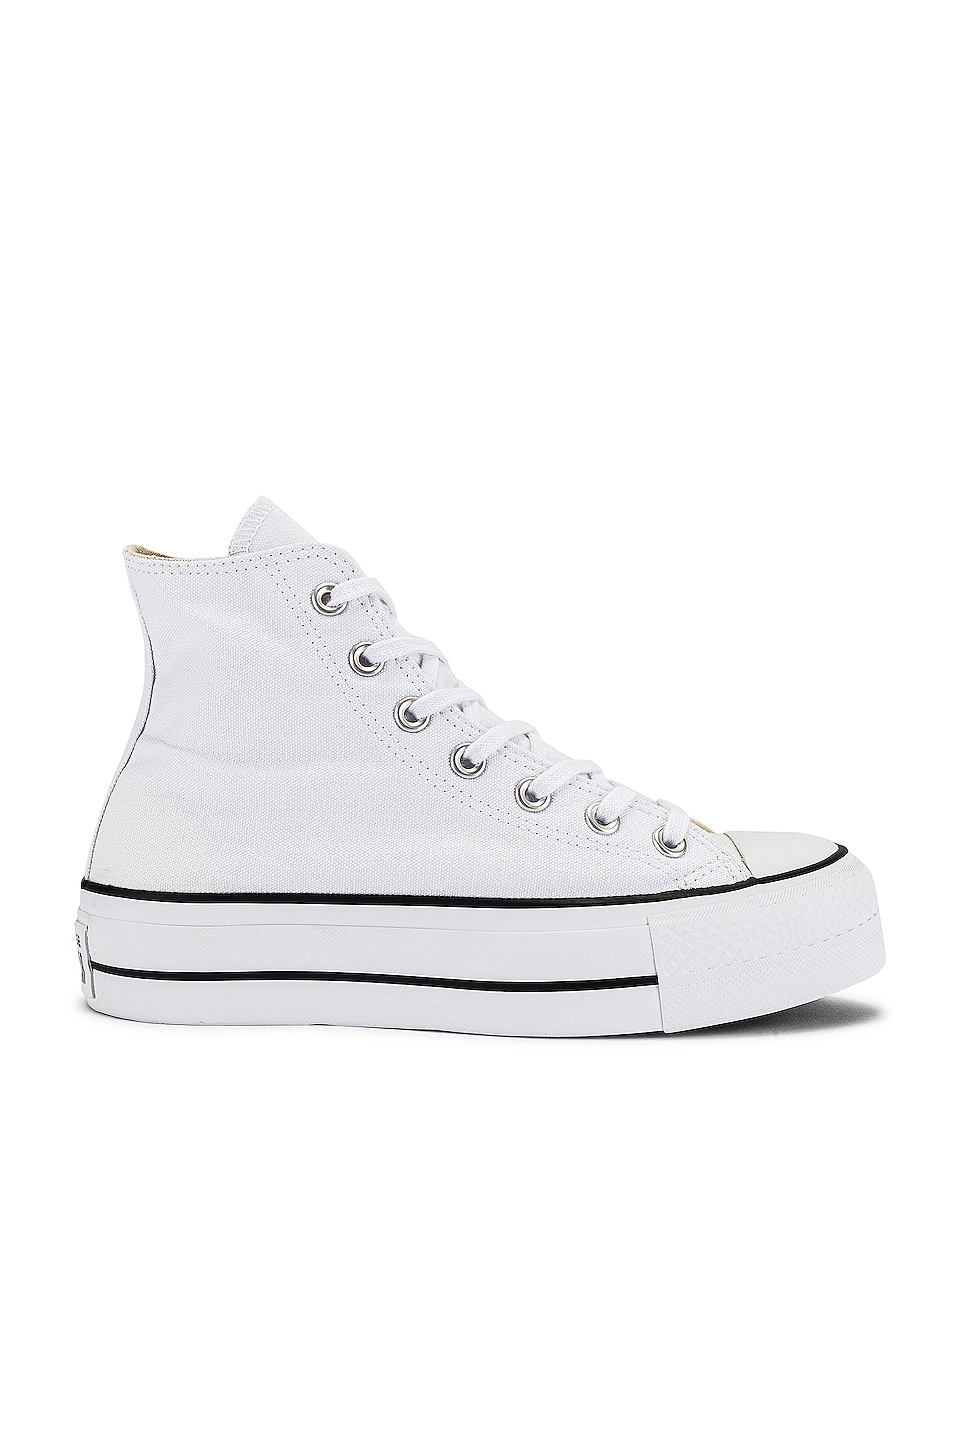 ايس كريم ديري كوين Converse Chuck Taylor All Star Lift Hi Sneaker in White & Black ... ايس كريم ديري كوين